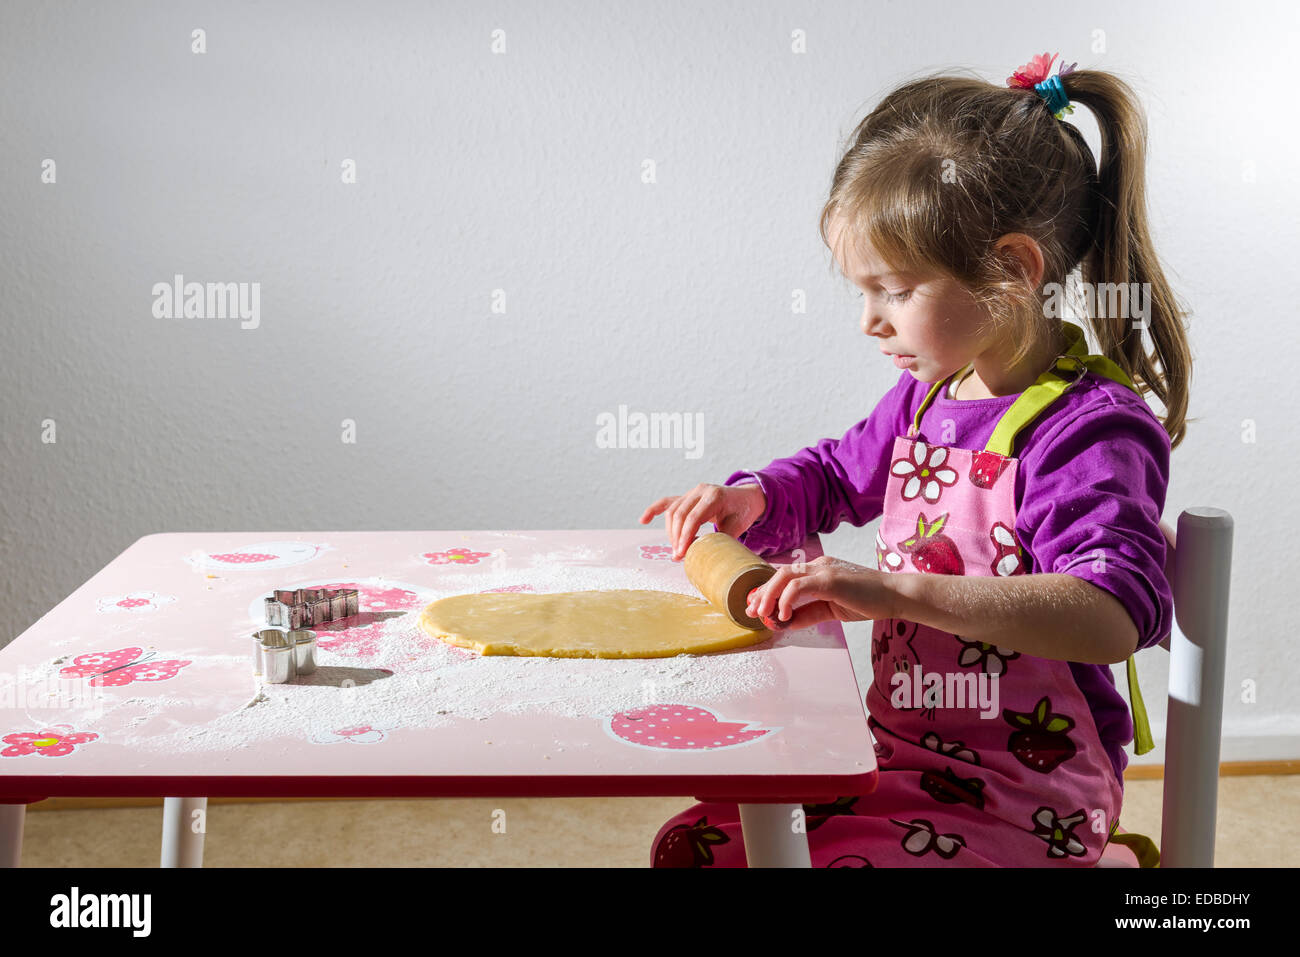 Fille, 3 ans, baking Christmas Cookies, rouler la pâte sur une table Banque D'Images